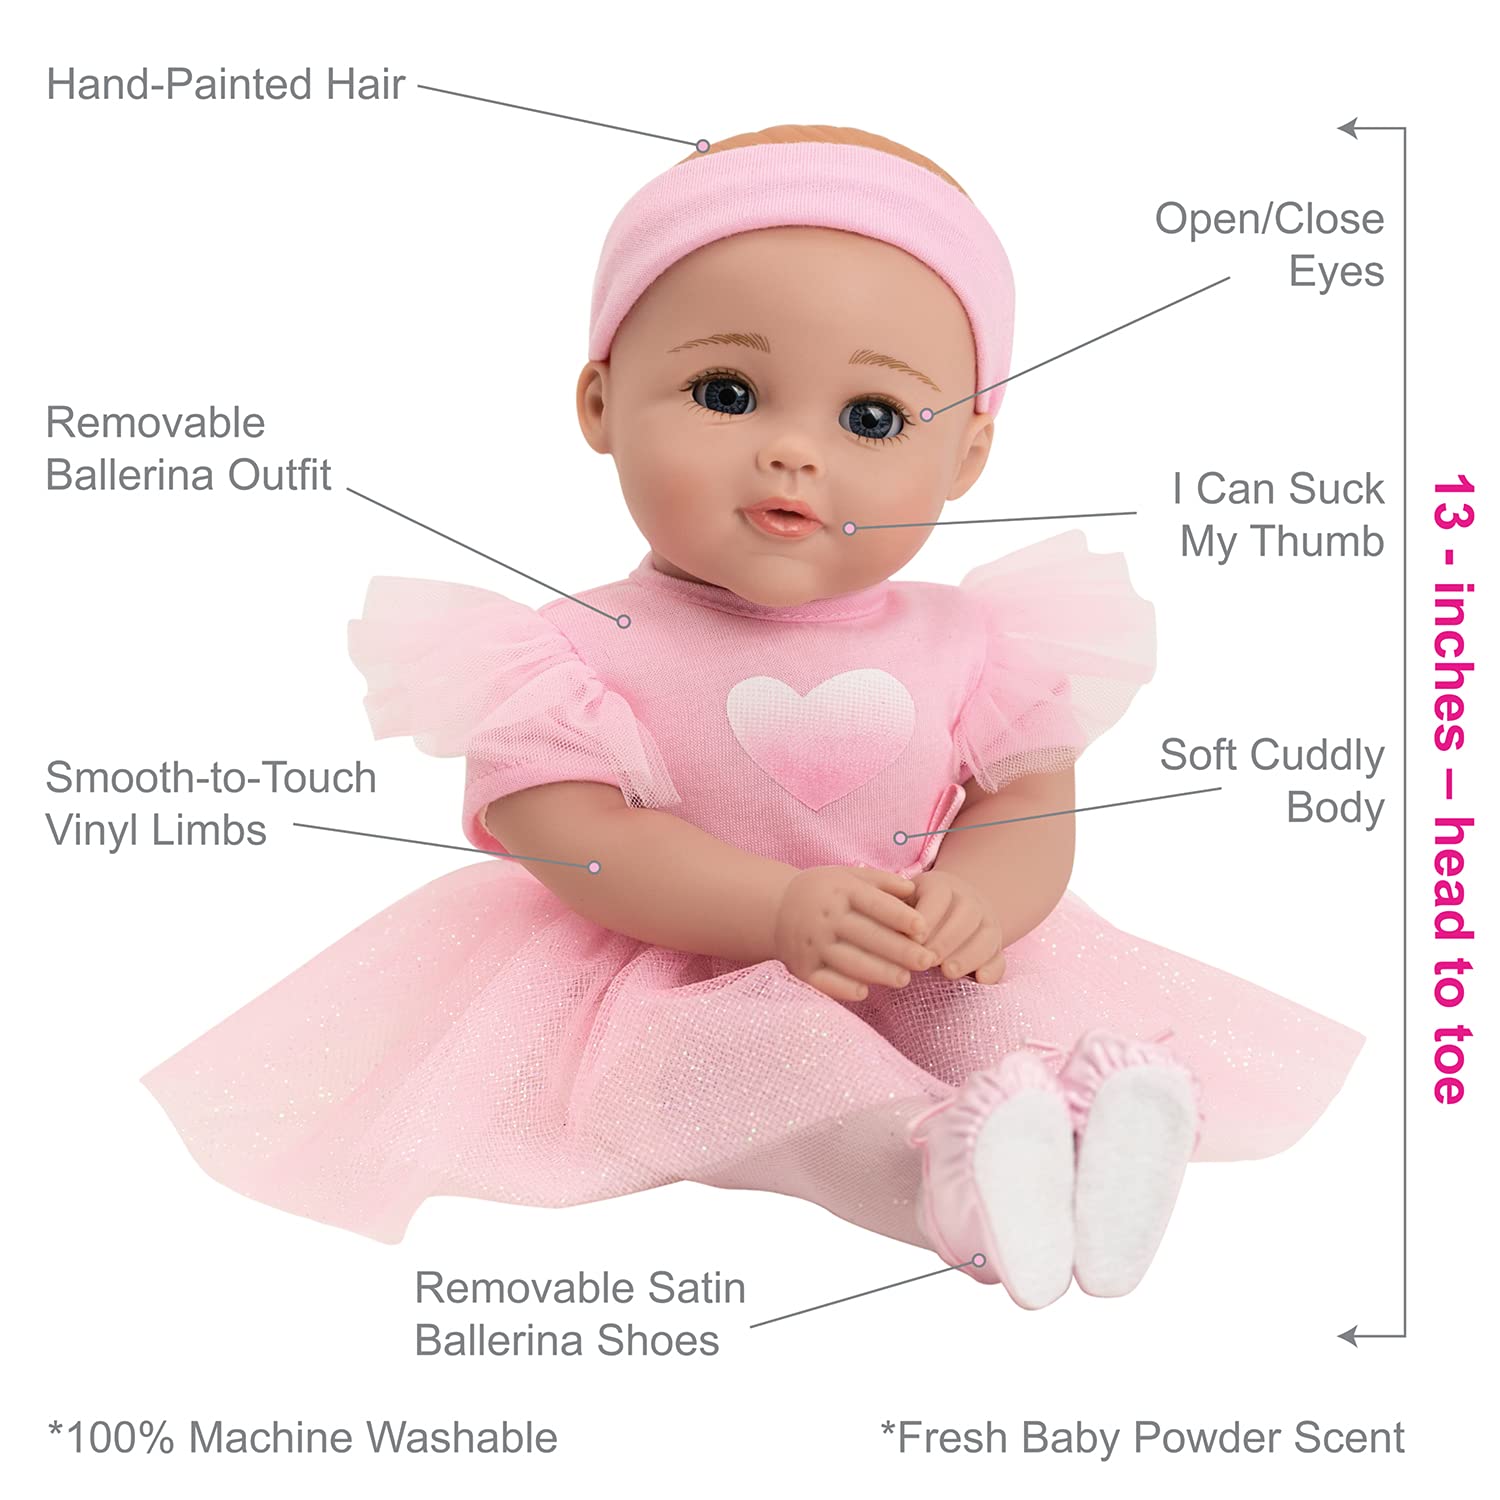 ADORA Ballerina - Aurora -13 inch Soft Baby Doll, Open/Close Eyes